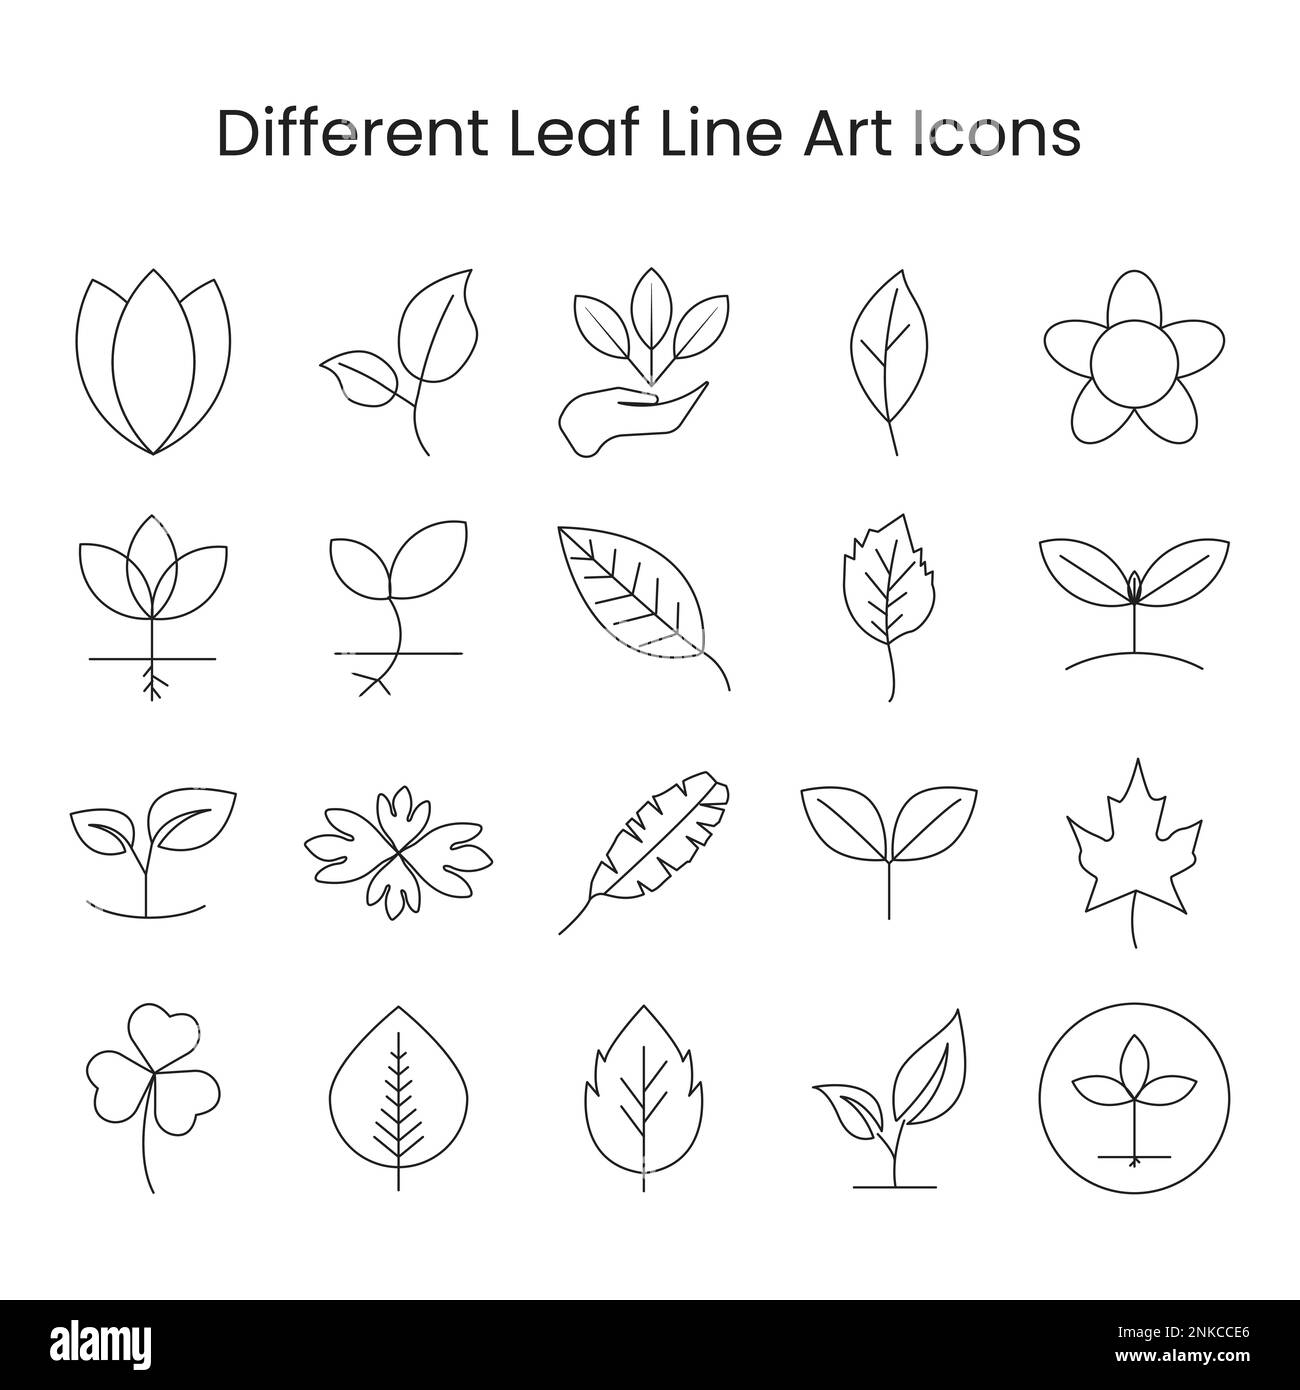 leaf icon vector set outline for nature design elements, vegan leaf, nature leaf set Stock Vector